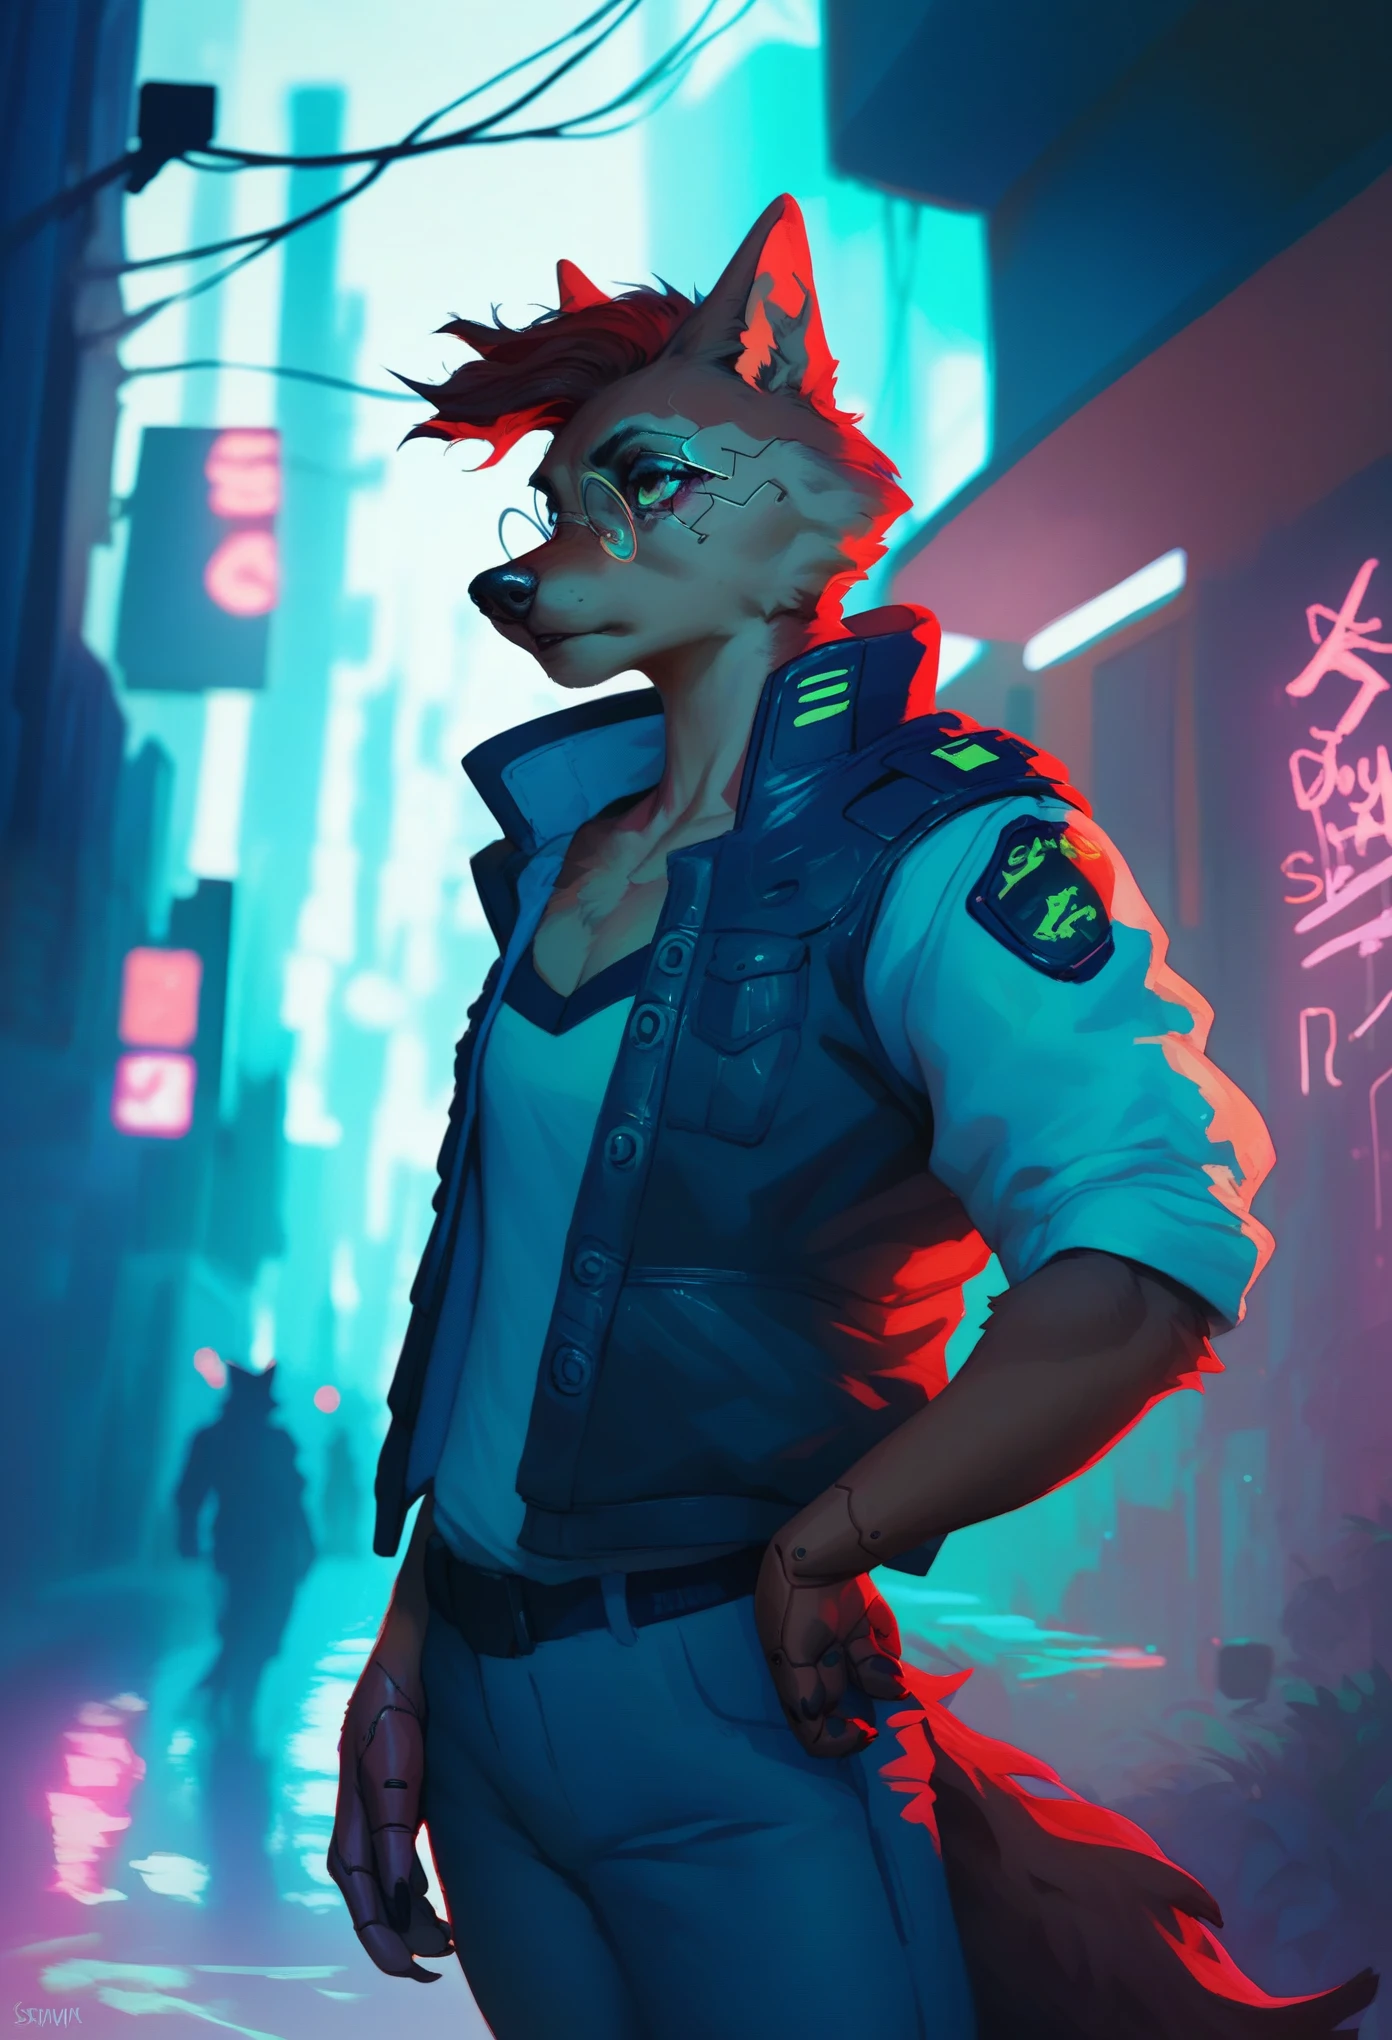 Um policial lobo negro antropomórfico no estilo cyberpunk, usando óculos redondos vermelhos e roupas inspiradas no cyberpunk, parado em um beco da cidade cyberpunk (como Cidade Noturna) envolvido em um tiroteio. O personagem deve estar totalmente enquadrado.